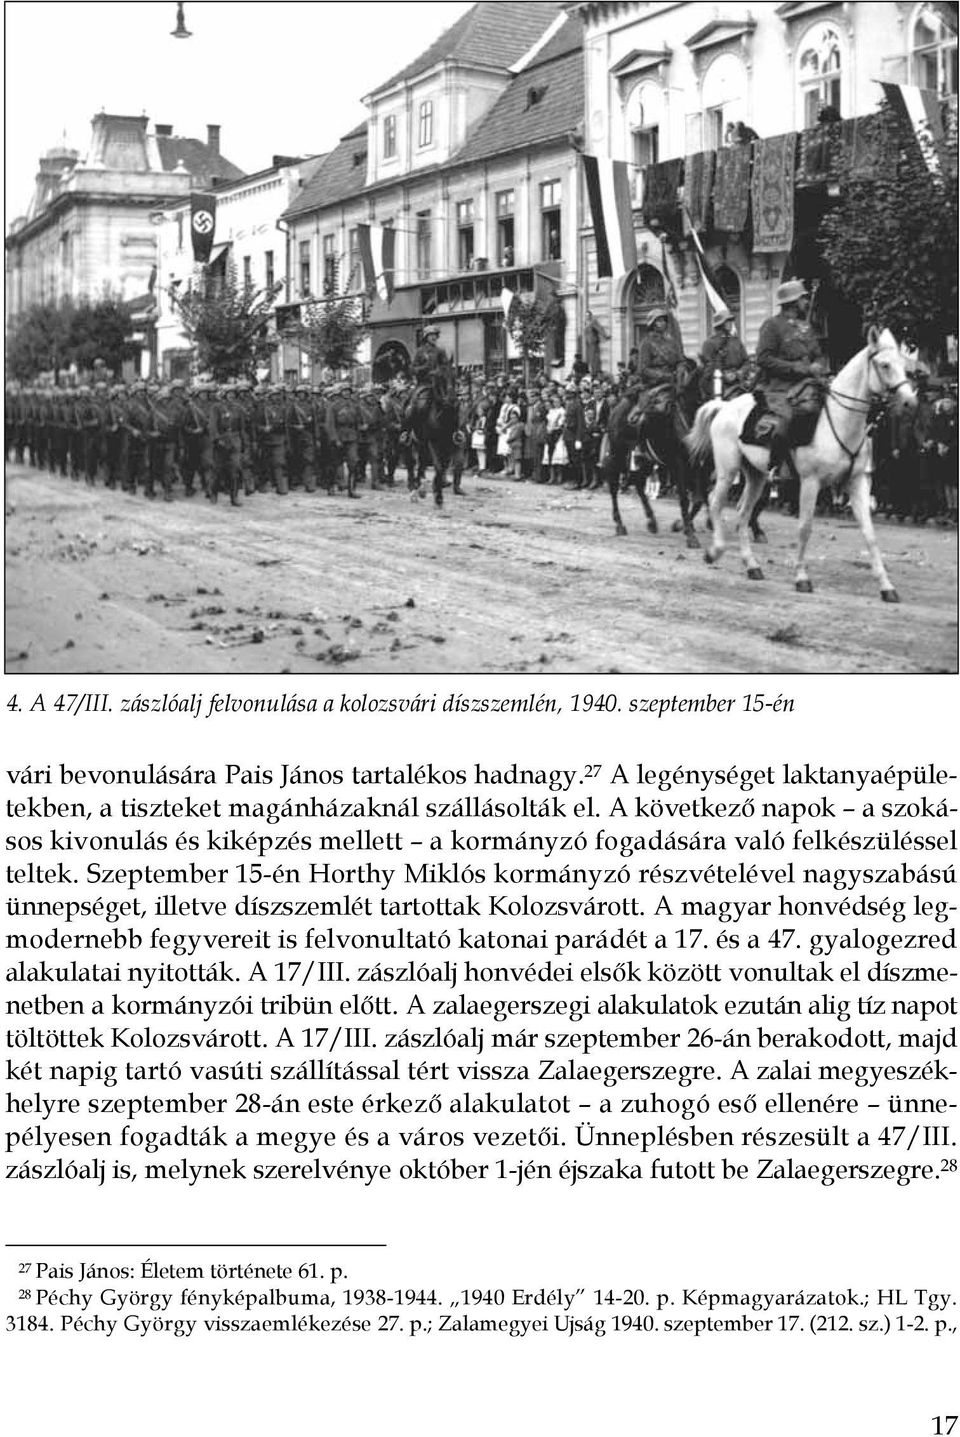 Szeptember 15-én Horthy Miklós kormányzó részvételével nagyszabású ünnepséget, illetve díszszemlét tartottak Kolozsvárott.